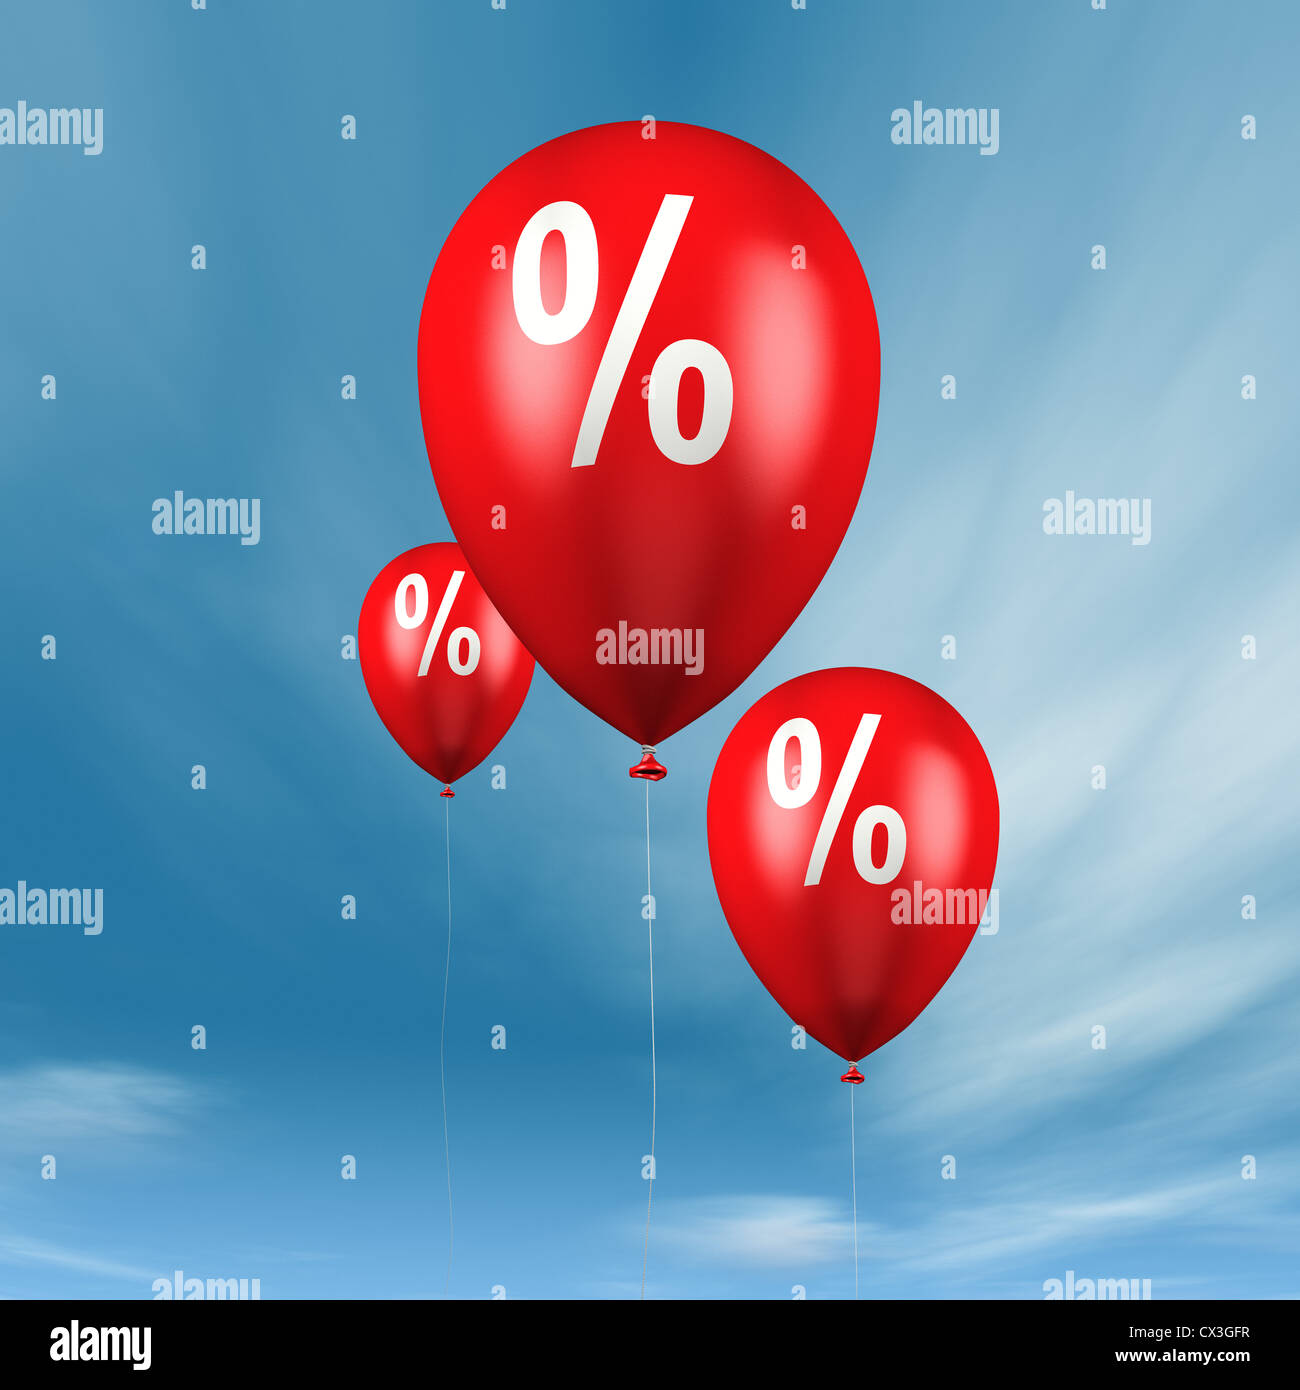 Prozentzeichen Ballons mit blauem vor Himmel - ballons avec signe de pourcentage dans le ciel bleu Banque D'Images